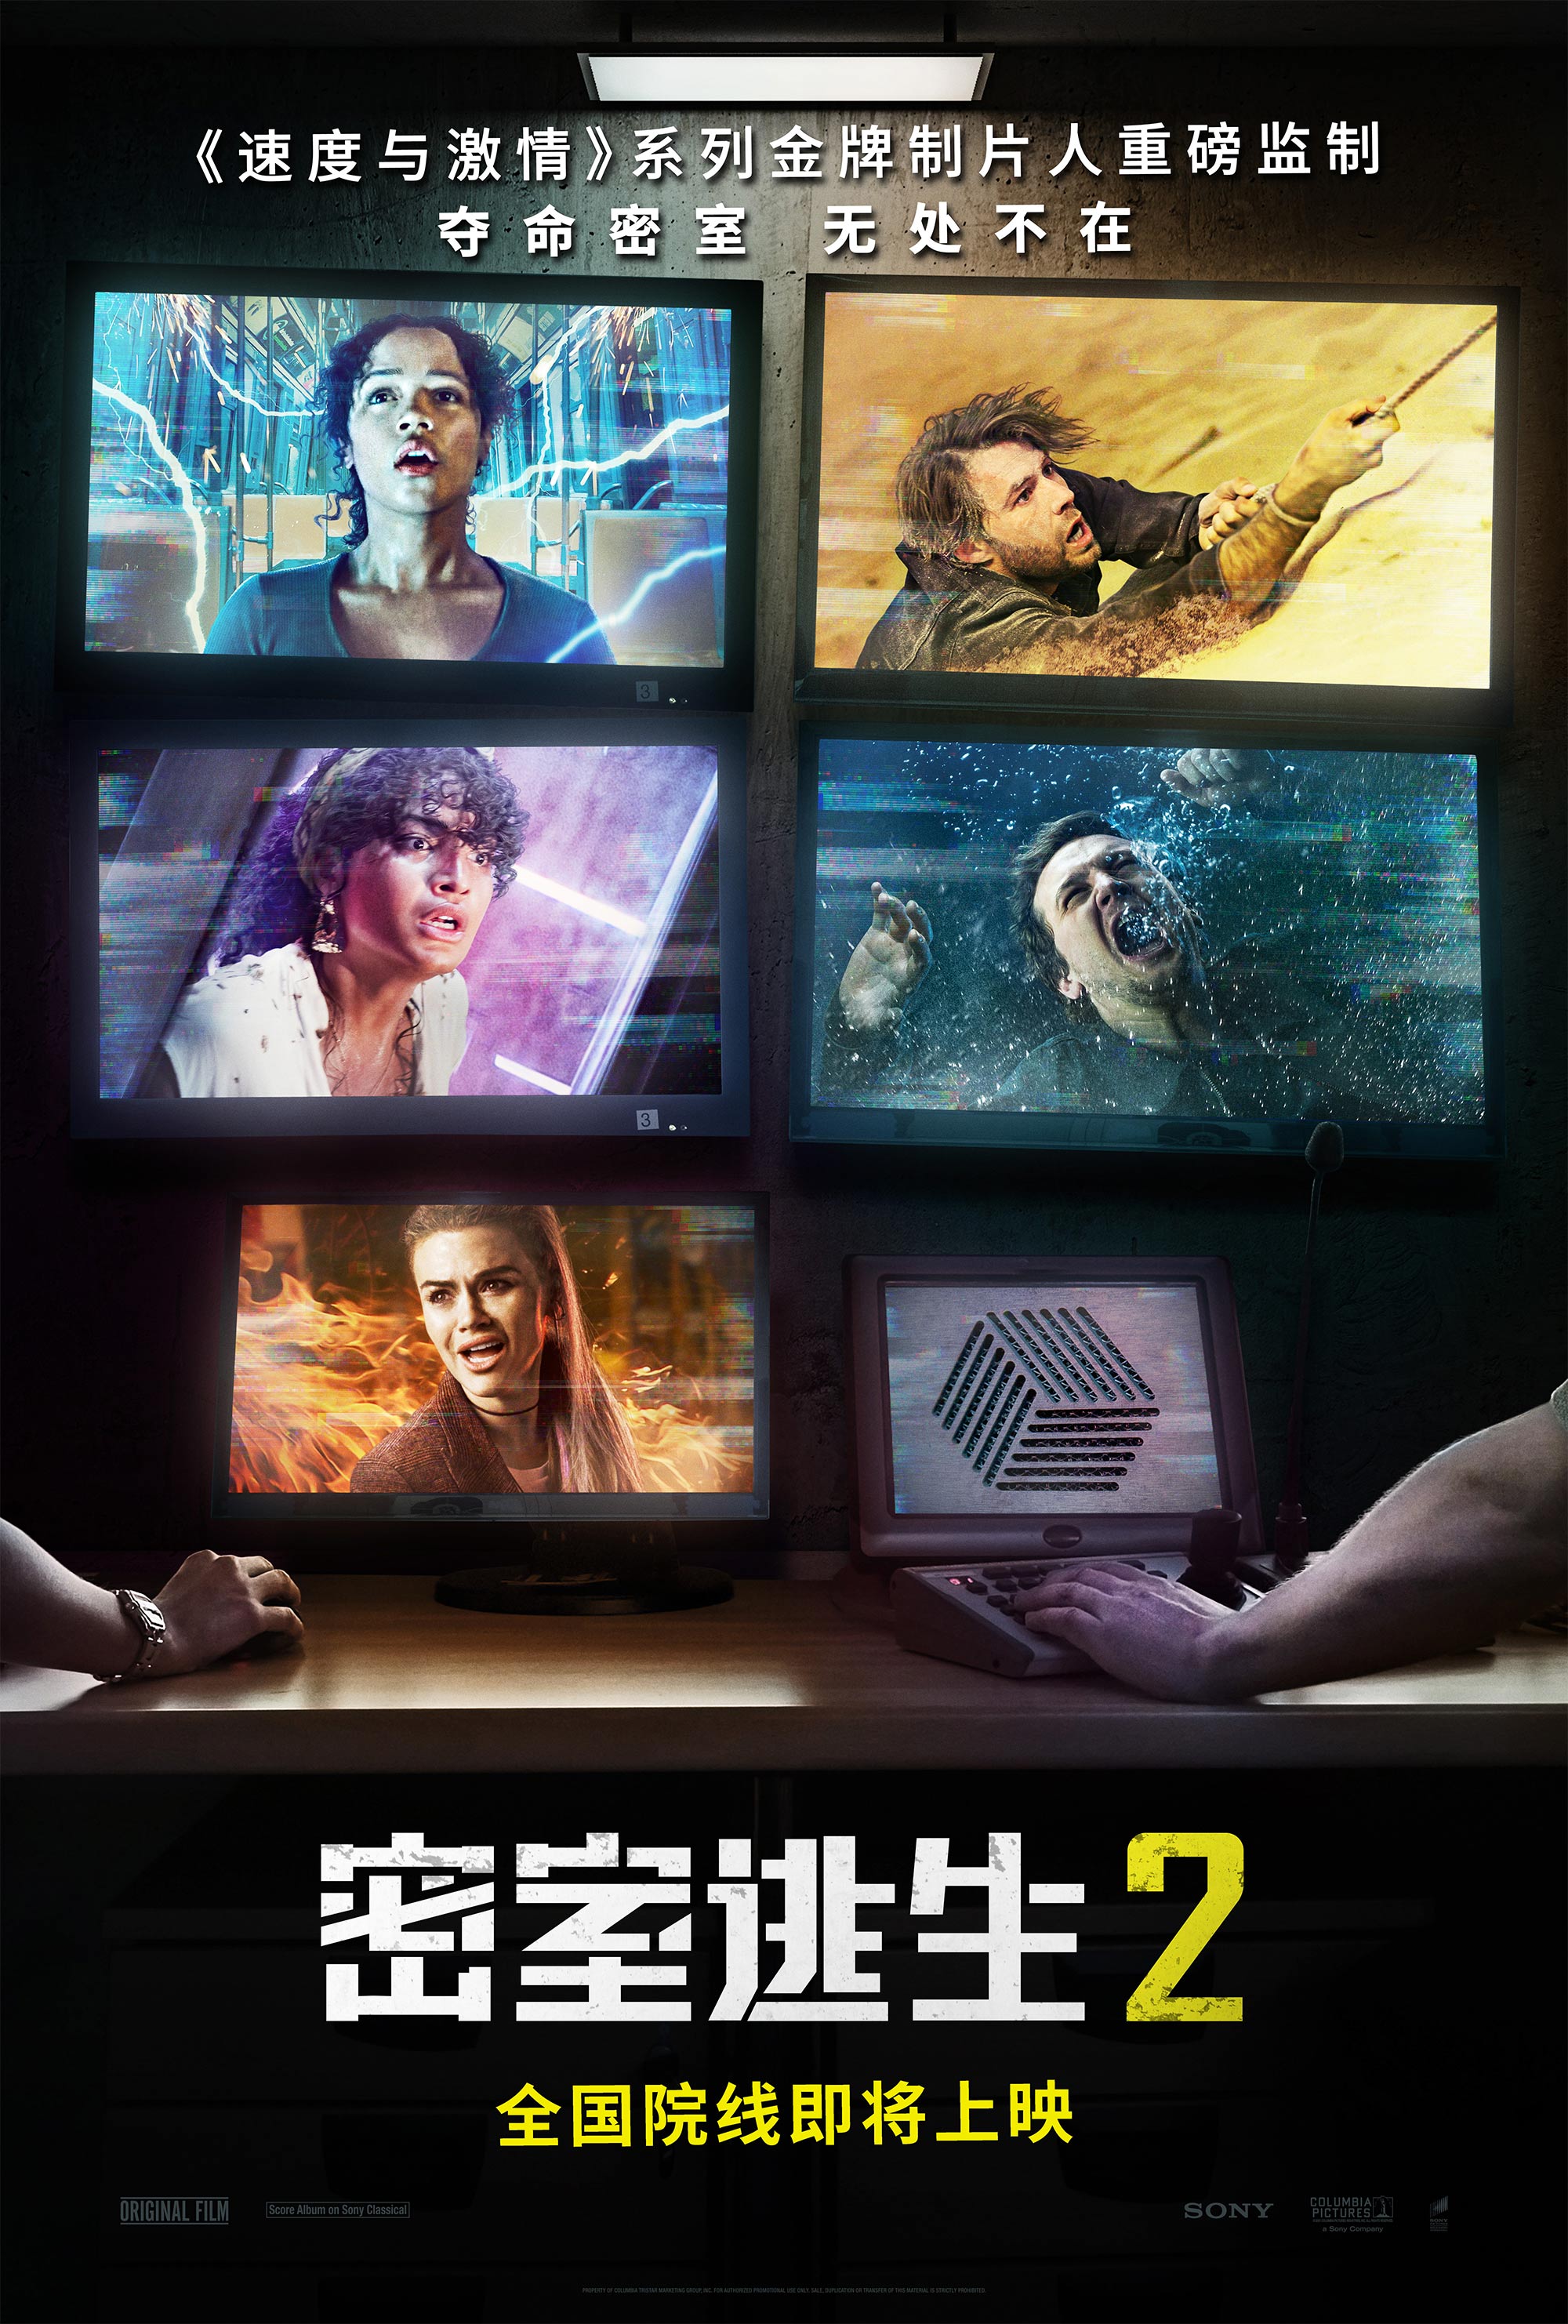 《密室逃生2》预告海报双发 玩家成游戏猎物上演亡命逃生